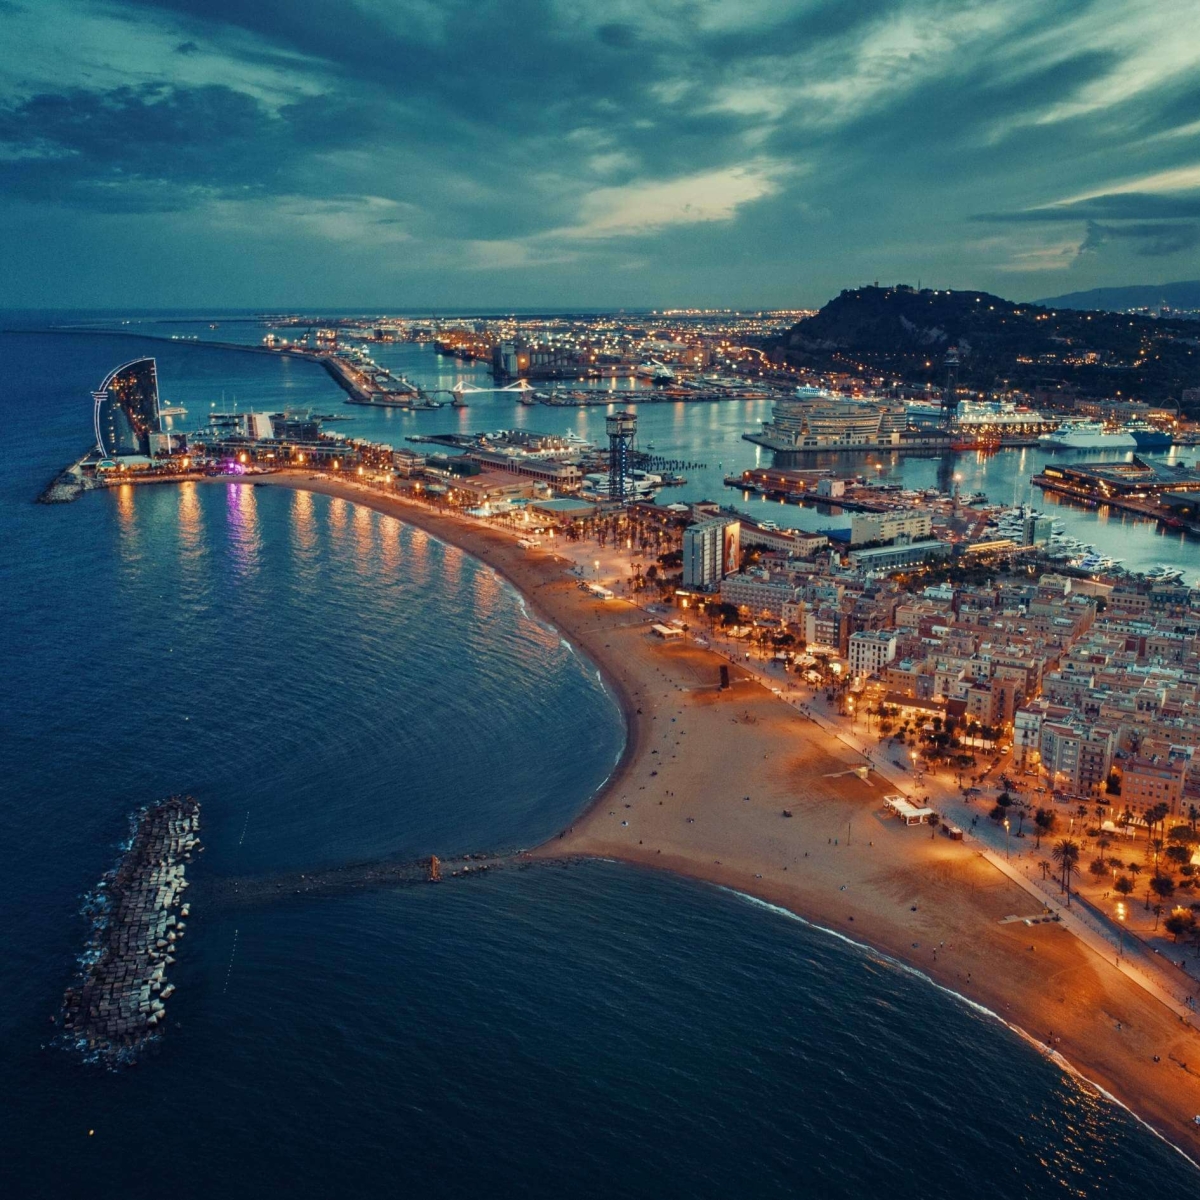 Vista aerea del molo della costa di Barcellona di notte in Spagna